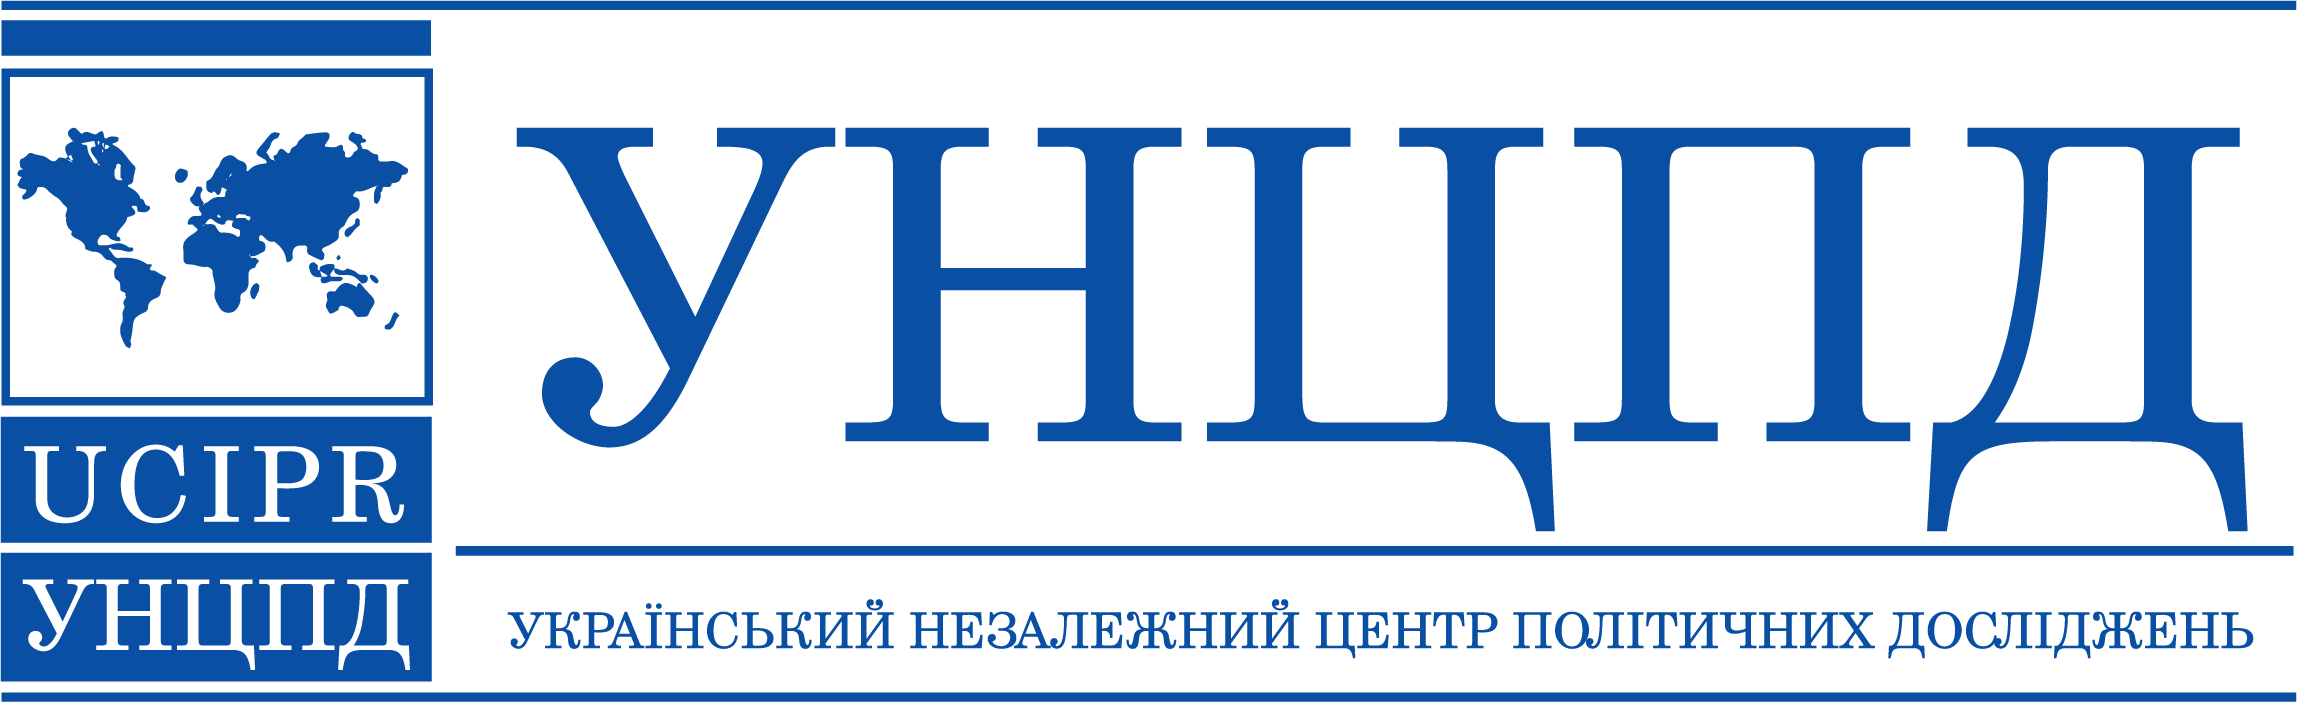 Український незалежний центр політичних досліджень